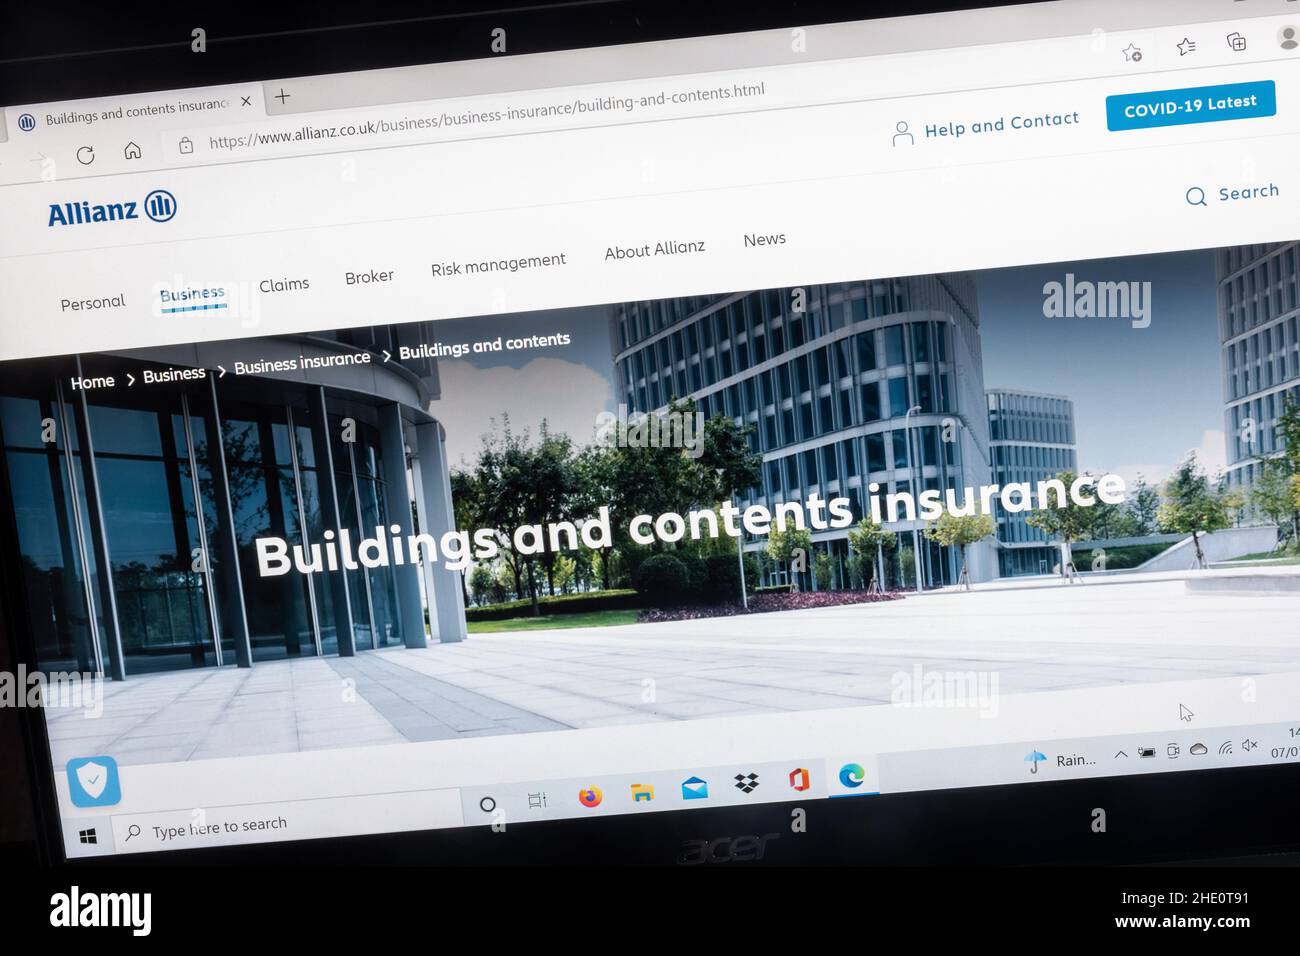 Sito web della compagnia di assicurazioni Allianz su un computer portatile, Regno Unito. Pagina assicurazione edifici e contenuti. Foto Stock